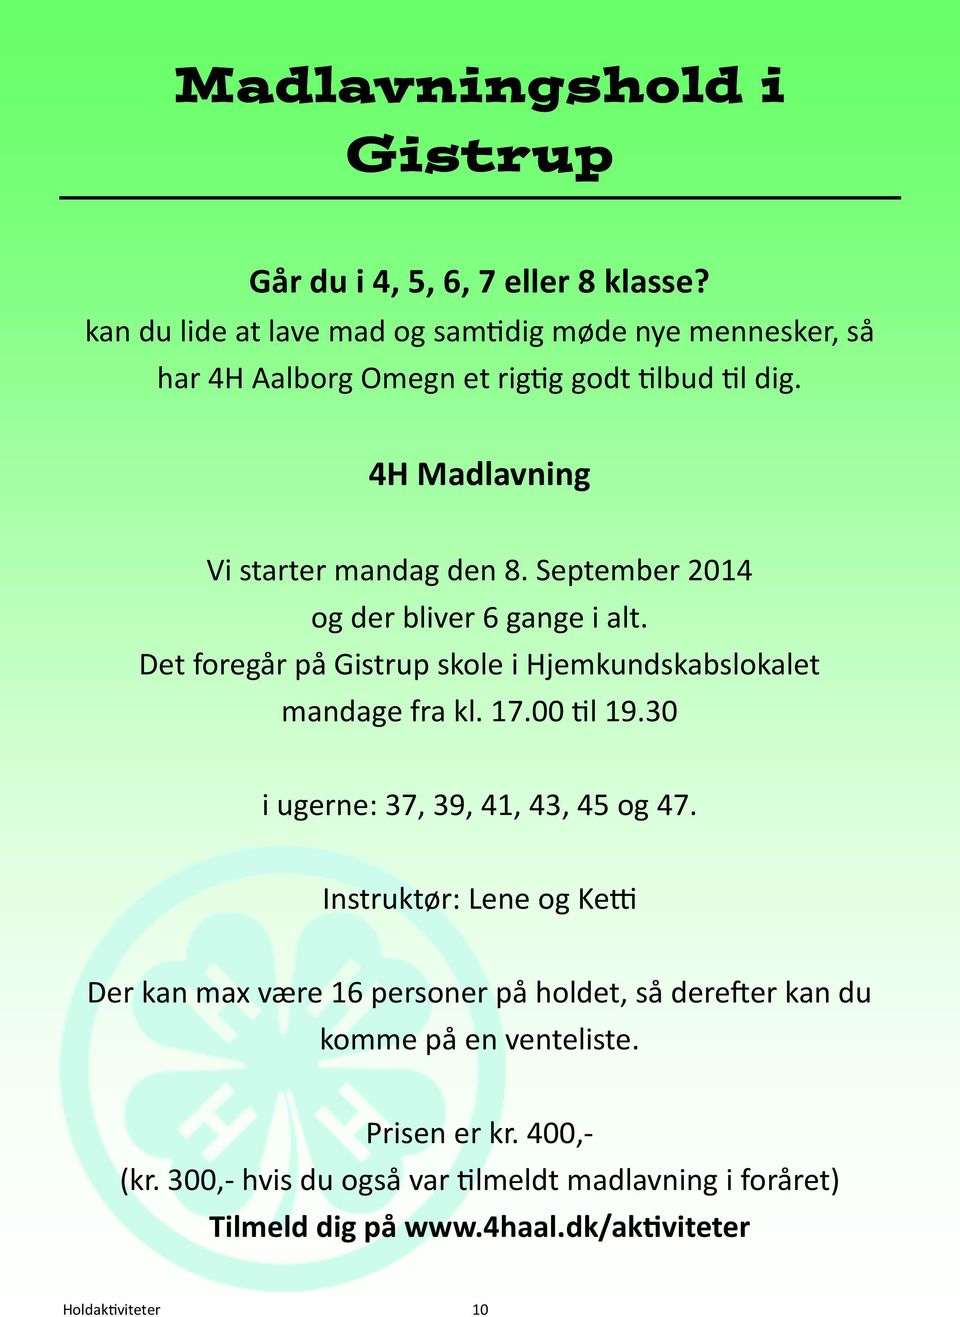 September 2014 og der bliver 6 gange i alt. Det foregår på Gistrup skole i Hjemkundskabslokalet mandage fra kl. 17.00 l 19.